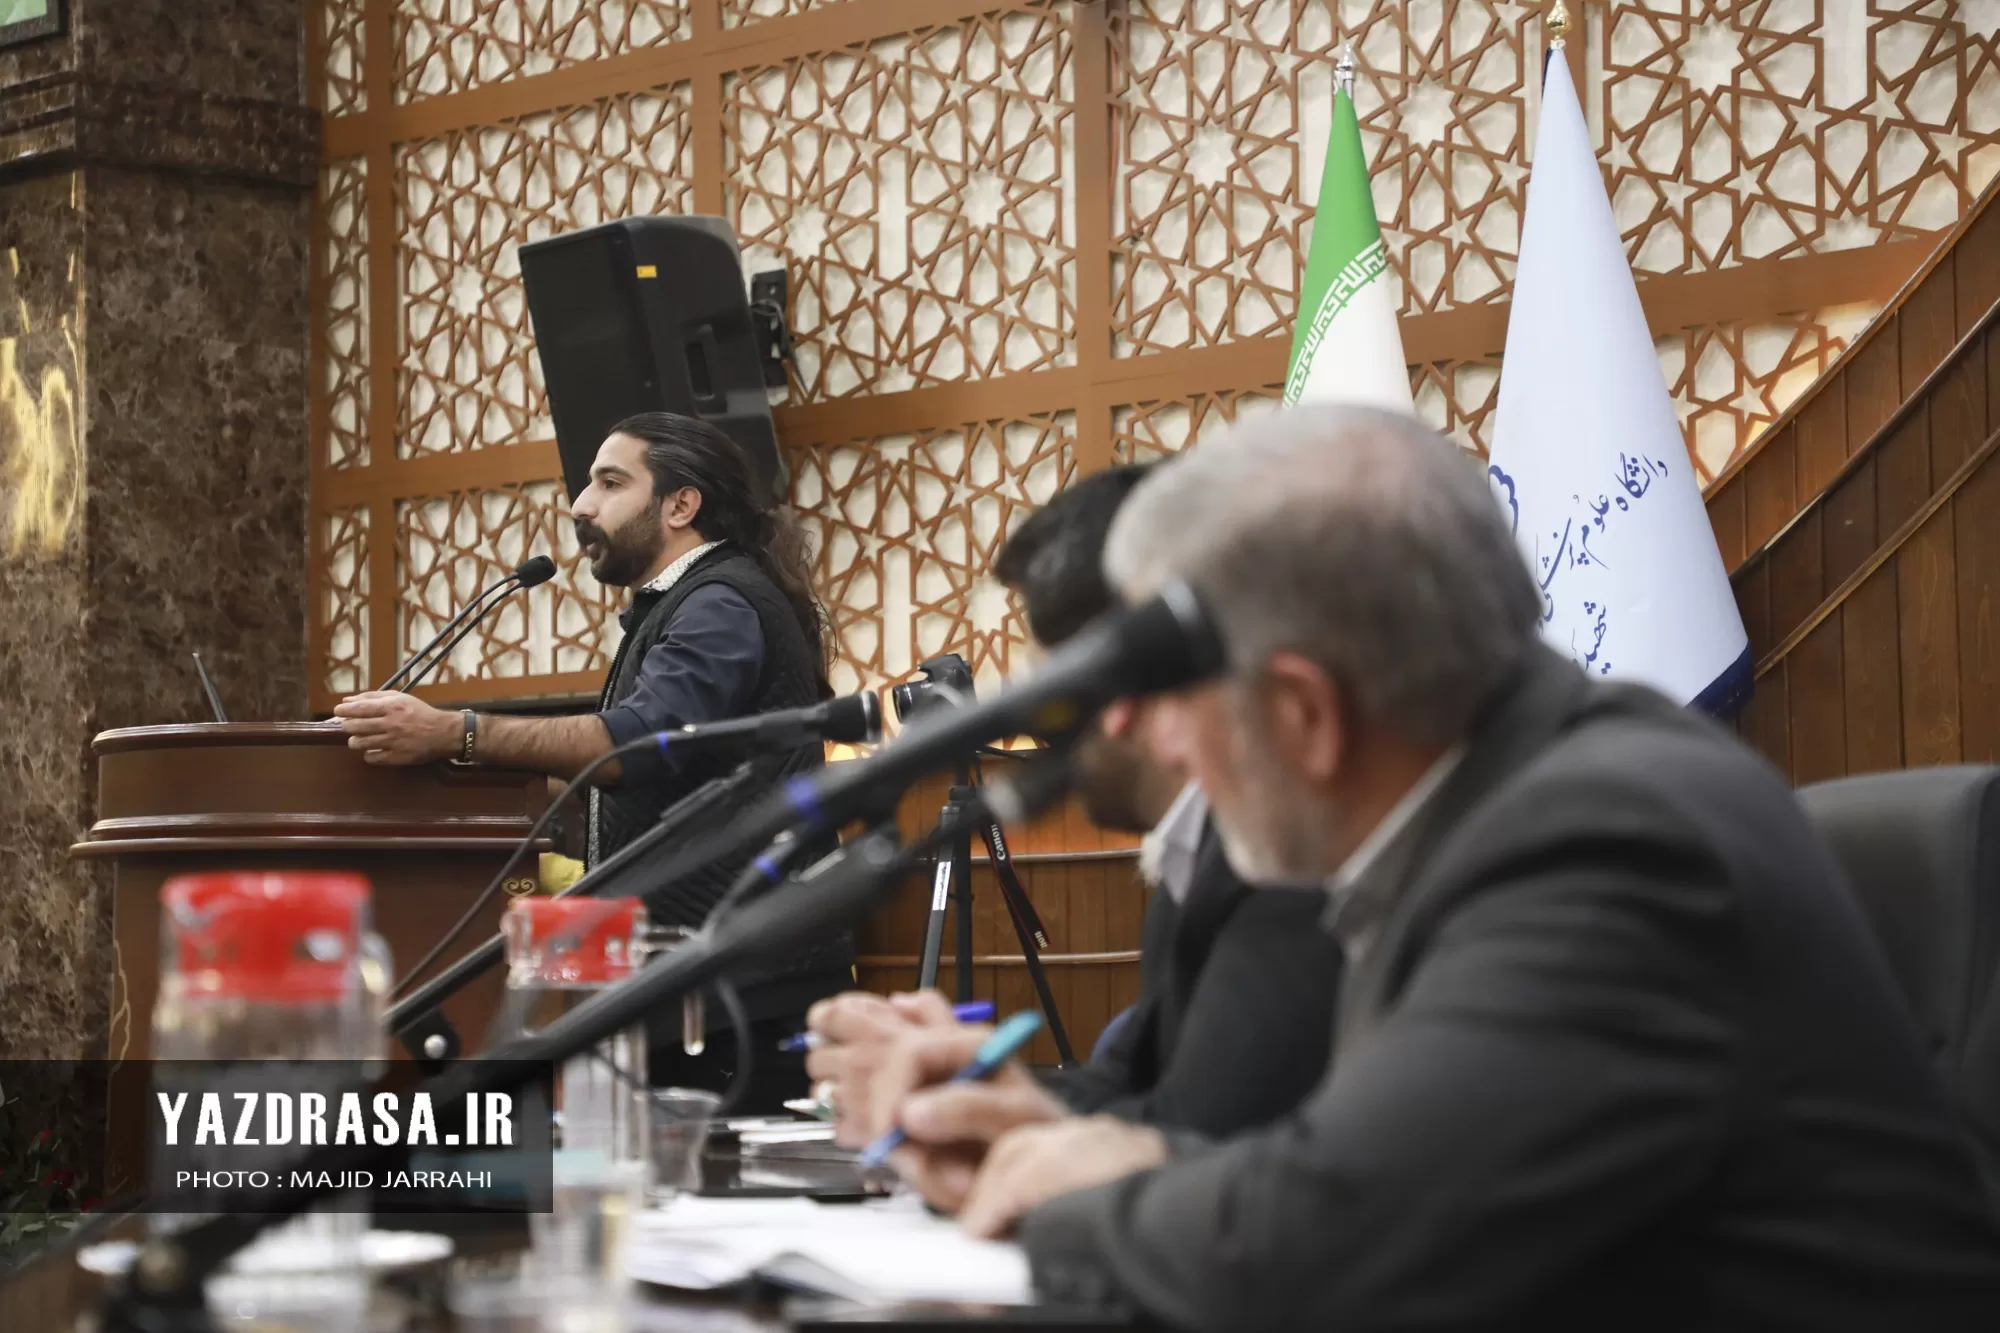 مناظره ۳ نامزد انتخابات مجلس در یزد